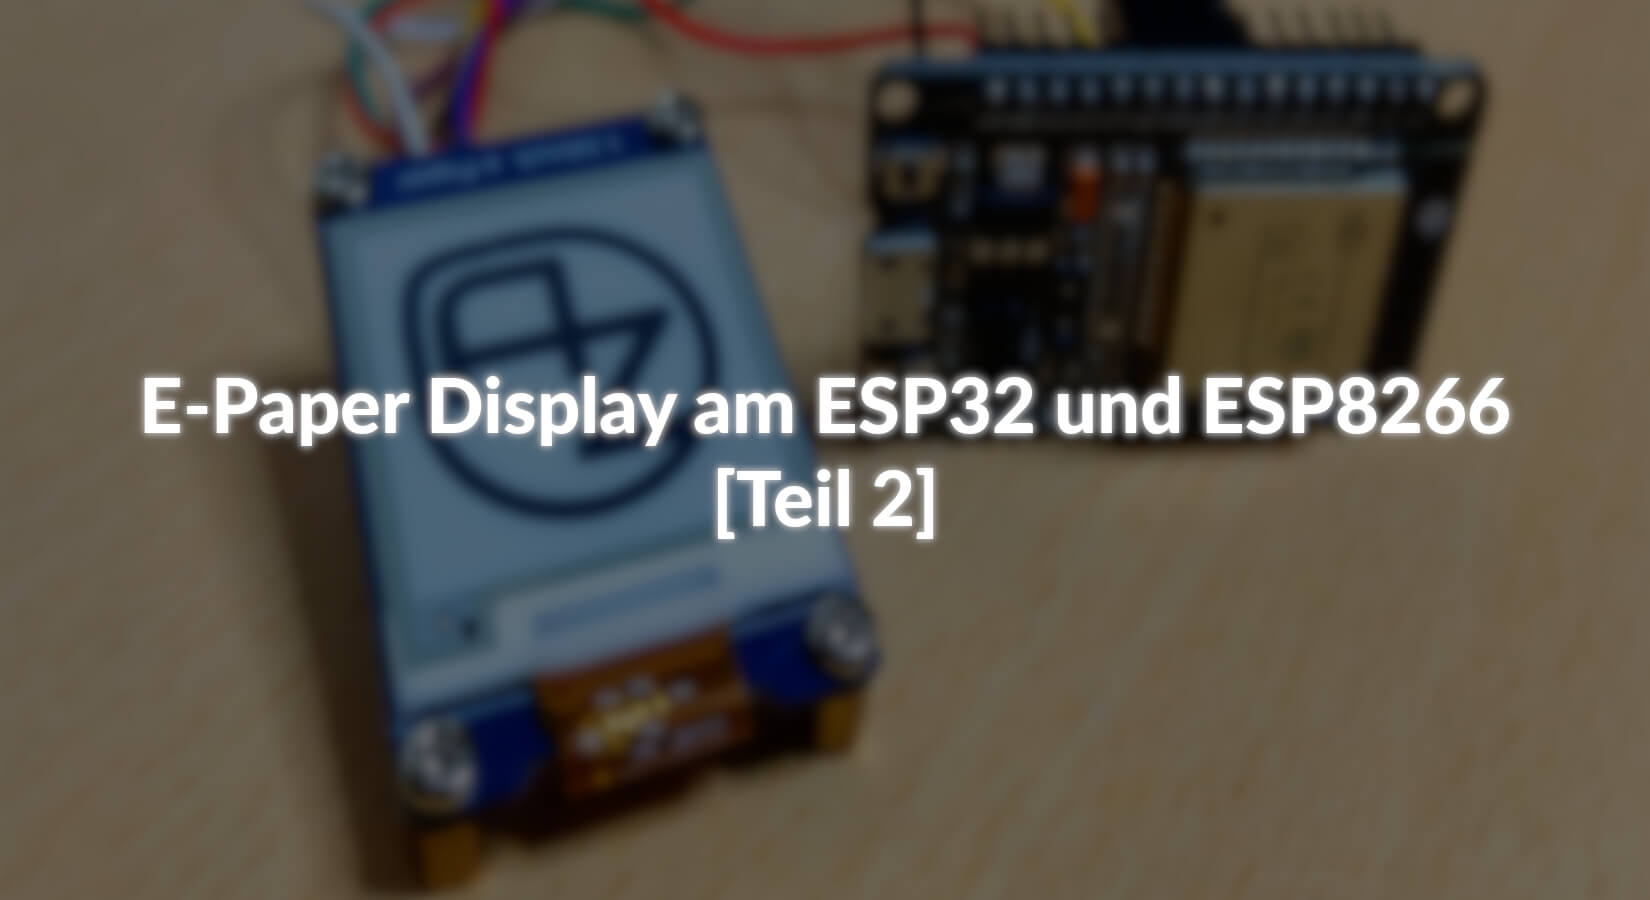 E-Paper Display am ESP32 und ESP8266 - [Teil 2] - AZ-Delivery